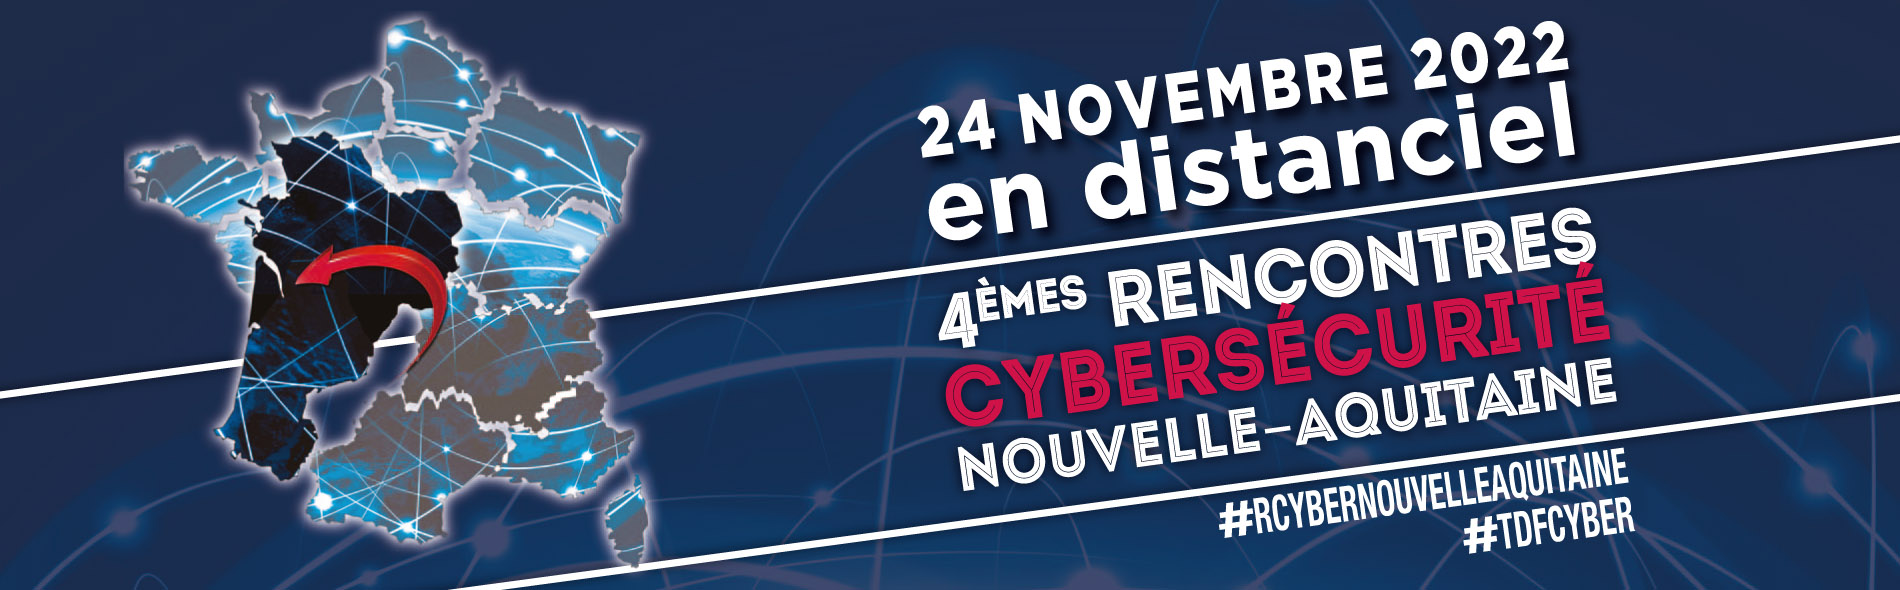 Les rencontres de la Cybersécurité Nouvelle-Aquitaine 2022